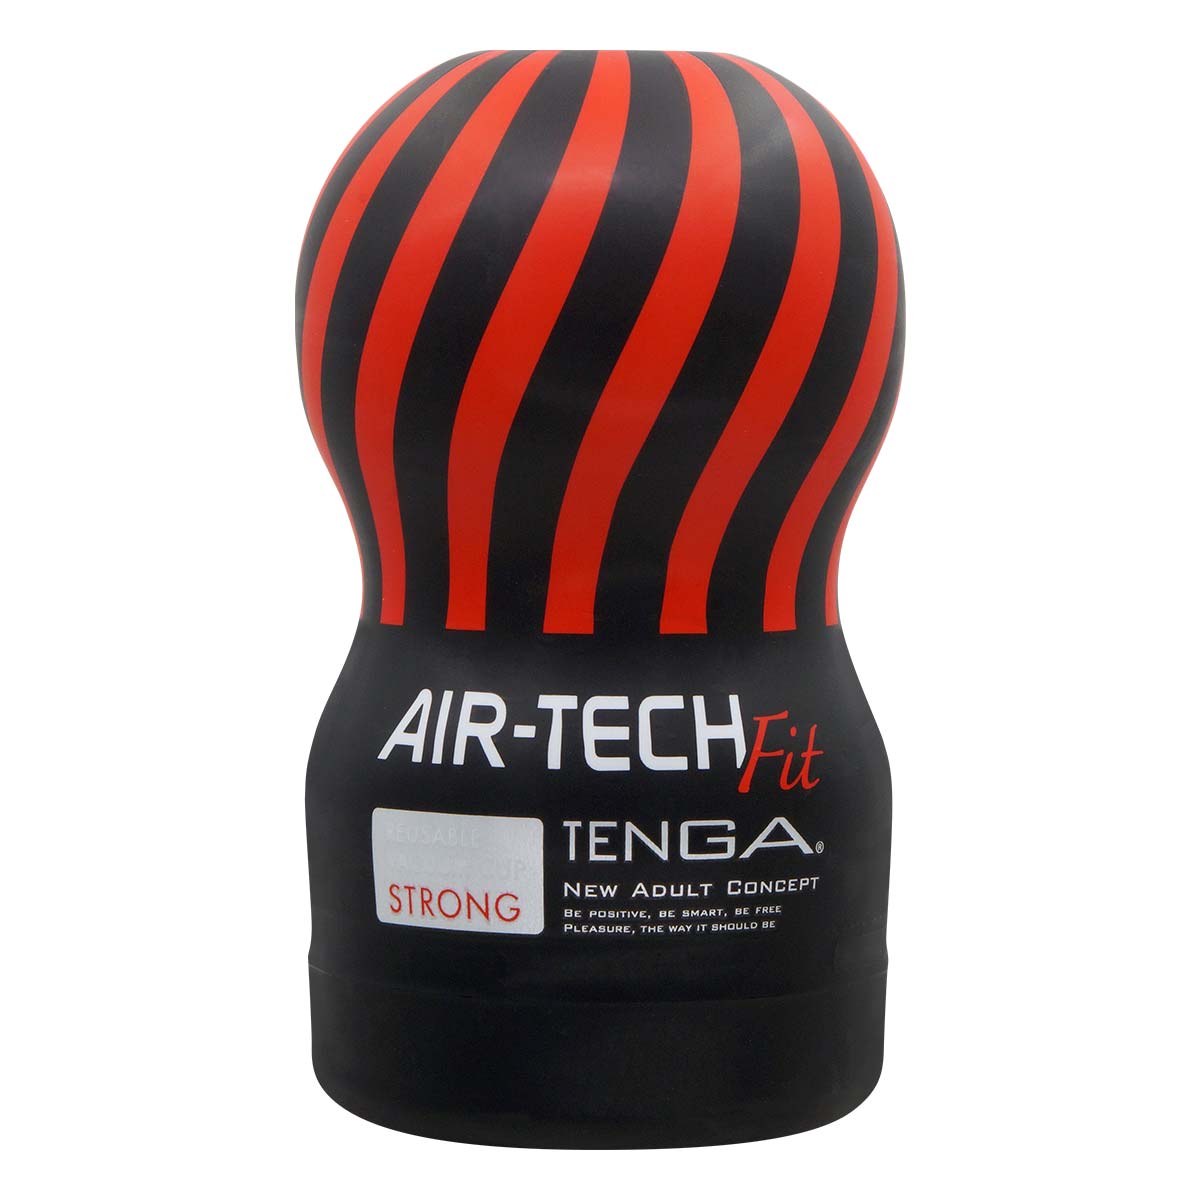 TENGA AIR-TECH Fit 重複使用型真空杯 刺激型-thumb_2